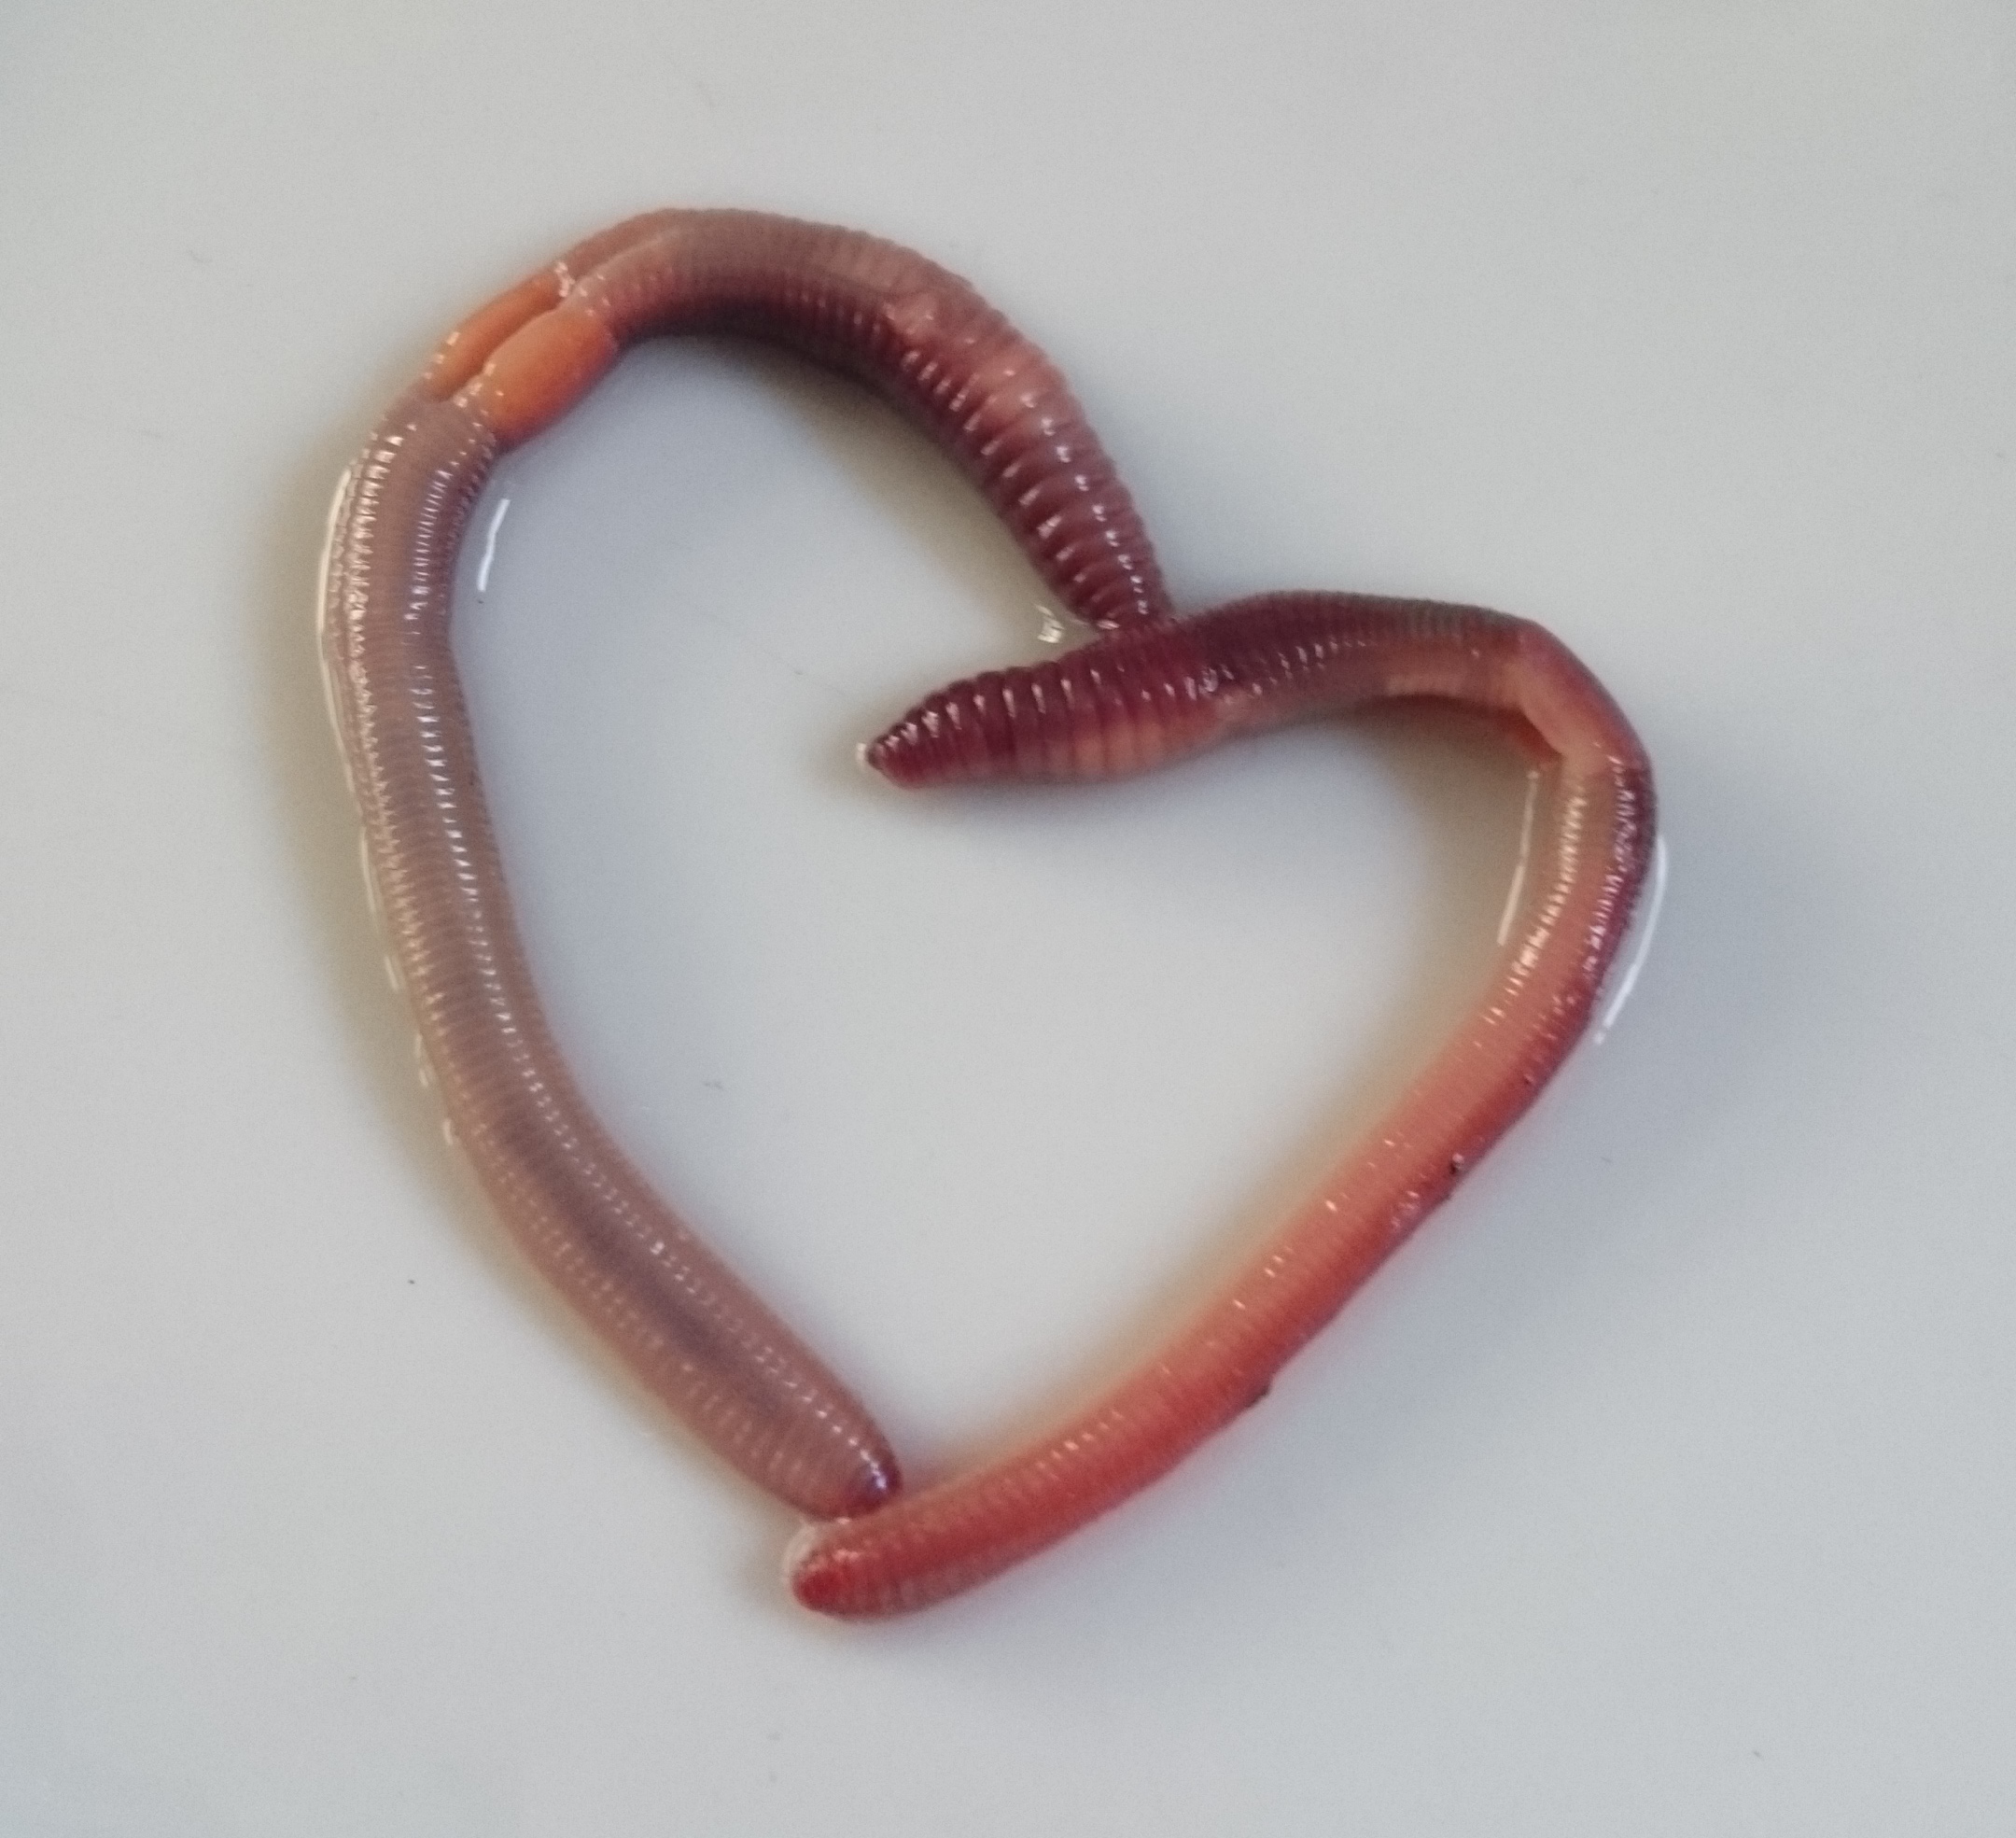 The amorous earthworms | Earthworm Watch